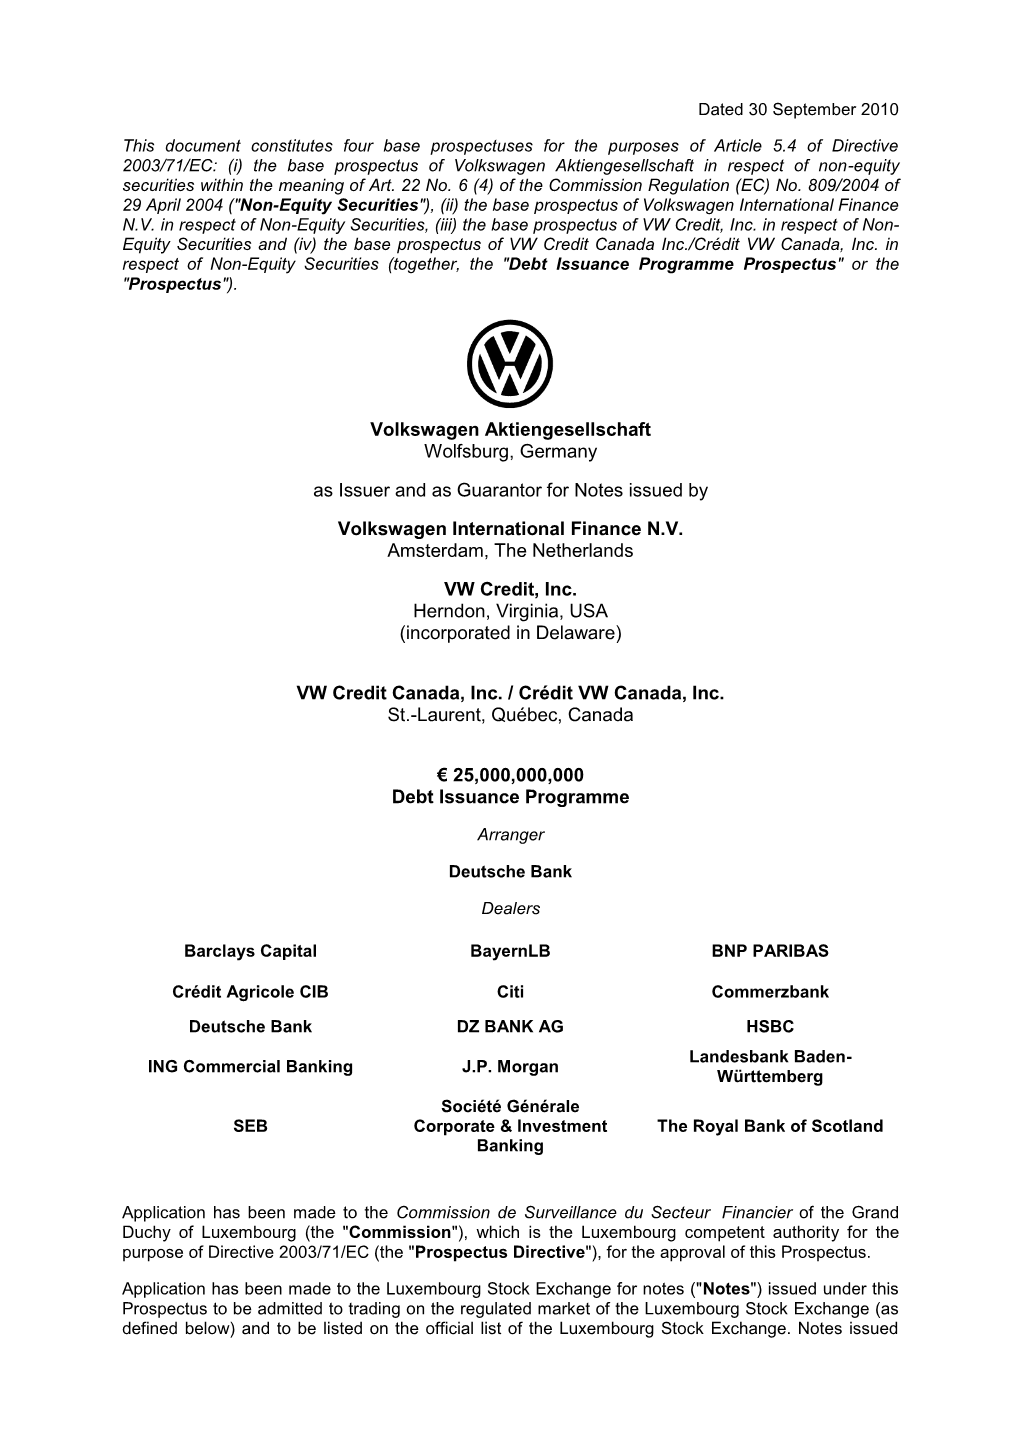 Volkswagen Aktiengesellschaft Wolfsburg, Germany As Issuer And